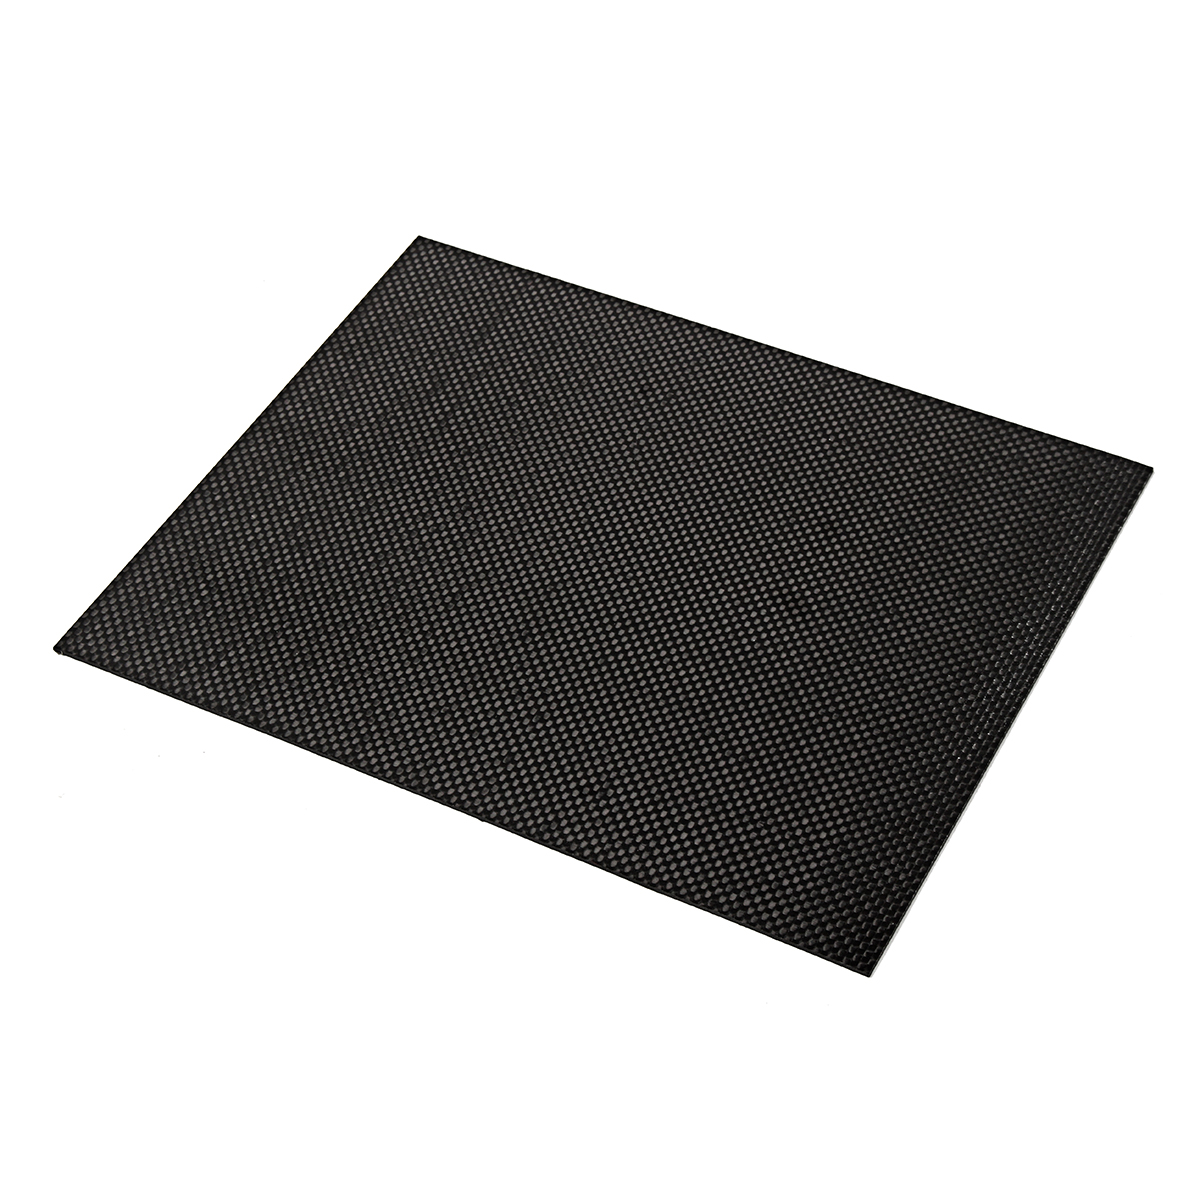 200x250x05-2mm-Plain-Weave-3K-Carbon-Fiber-Plate-Panel-Sheet-Tabby-Matt-Surface-Board-1332224-3